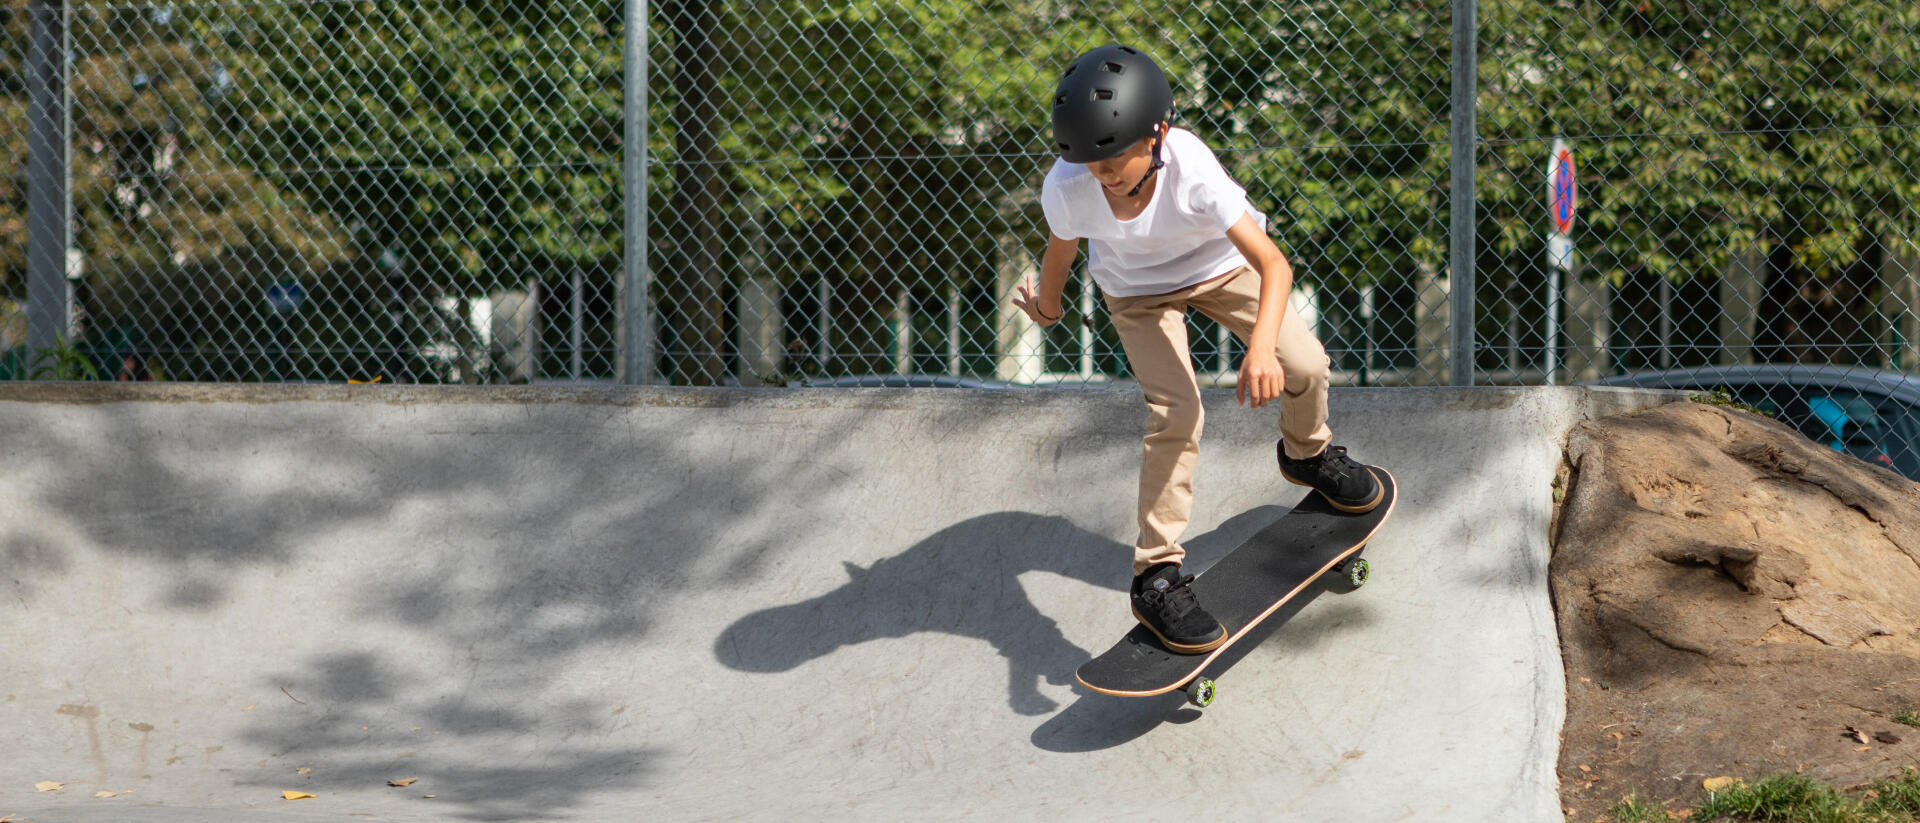  Skate, longboard e cruiser skate: escolhe o teu preferido!